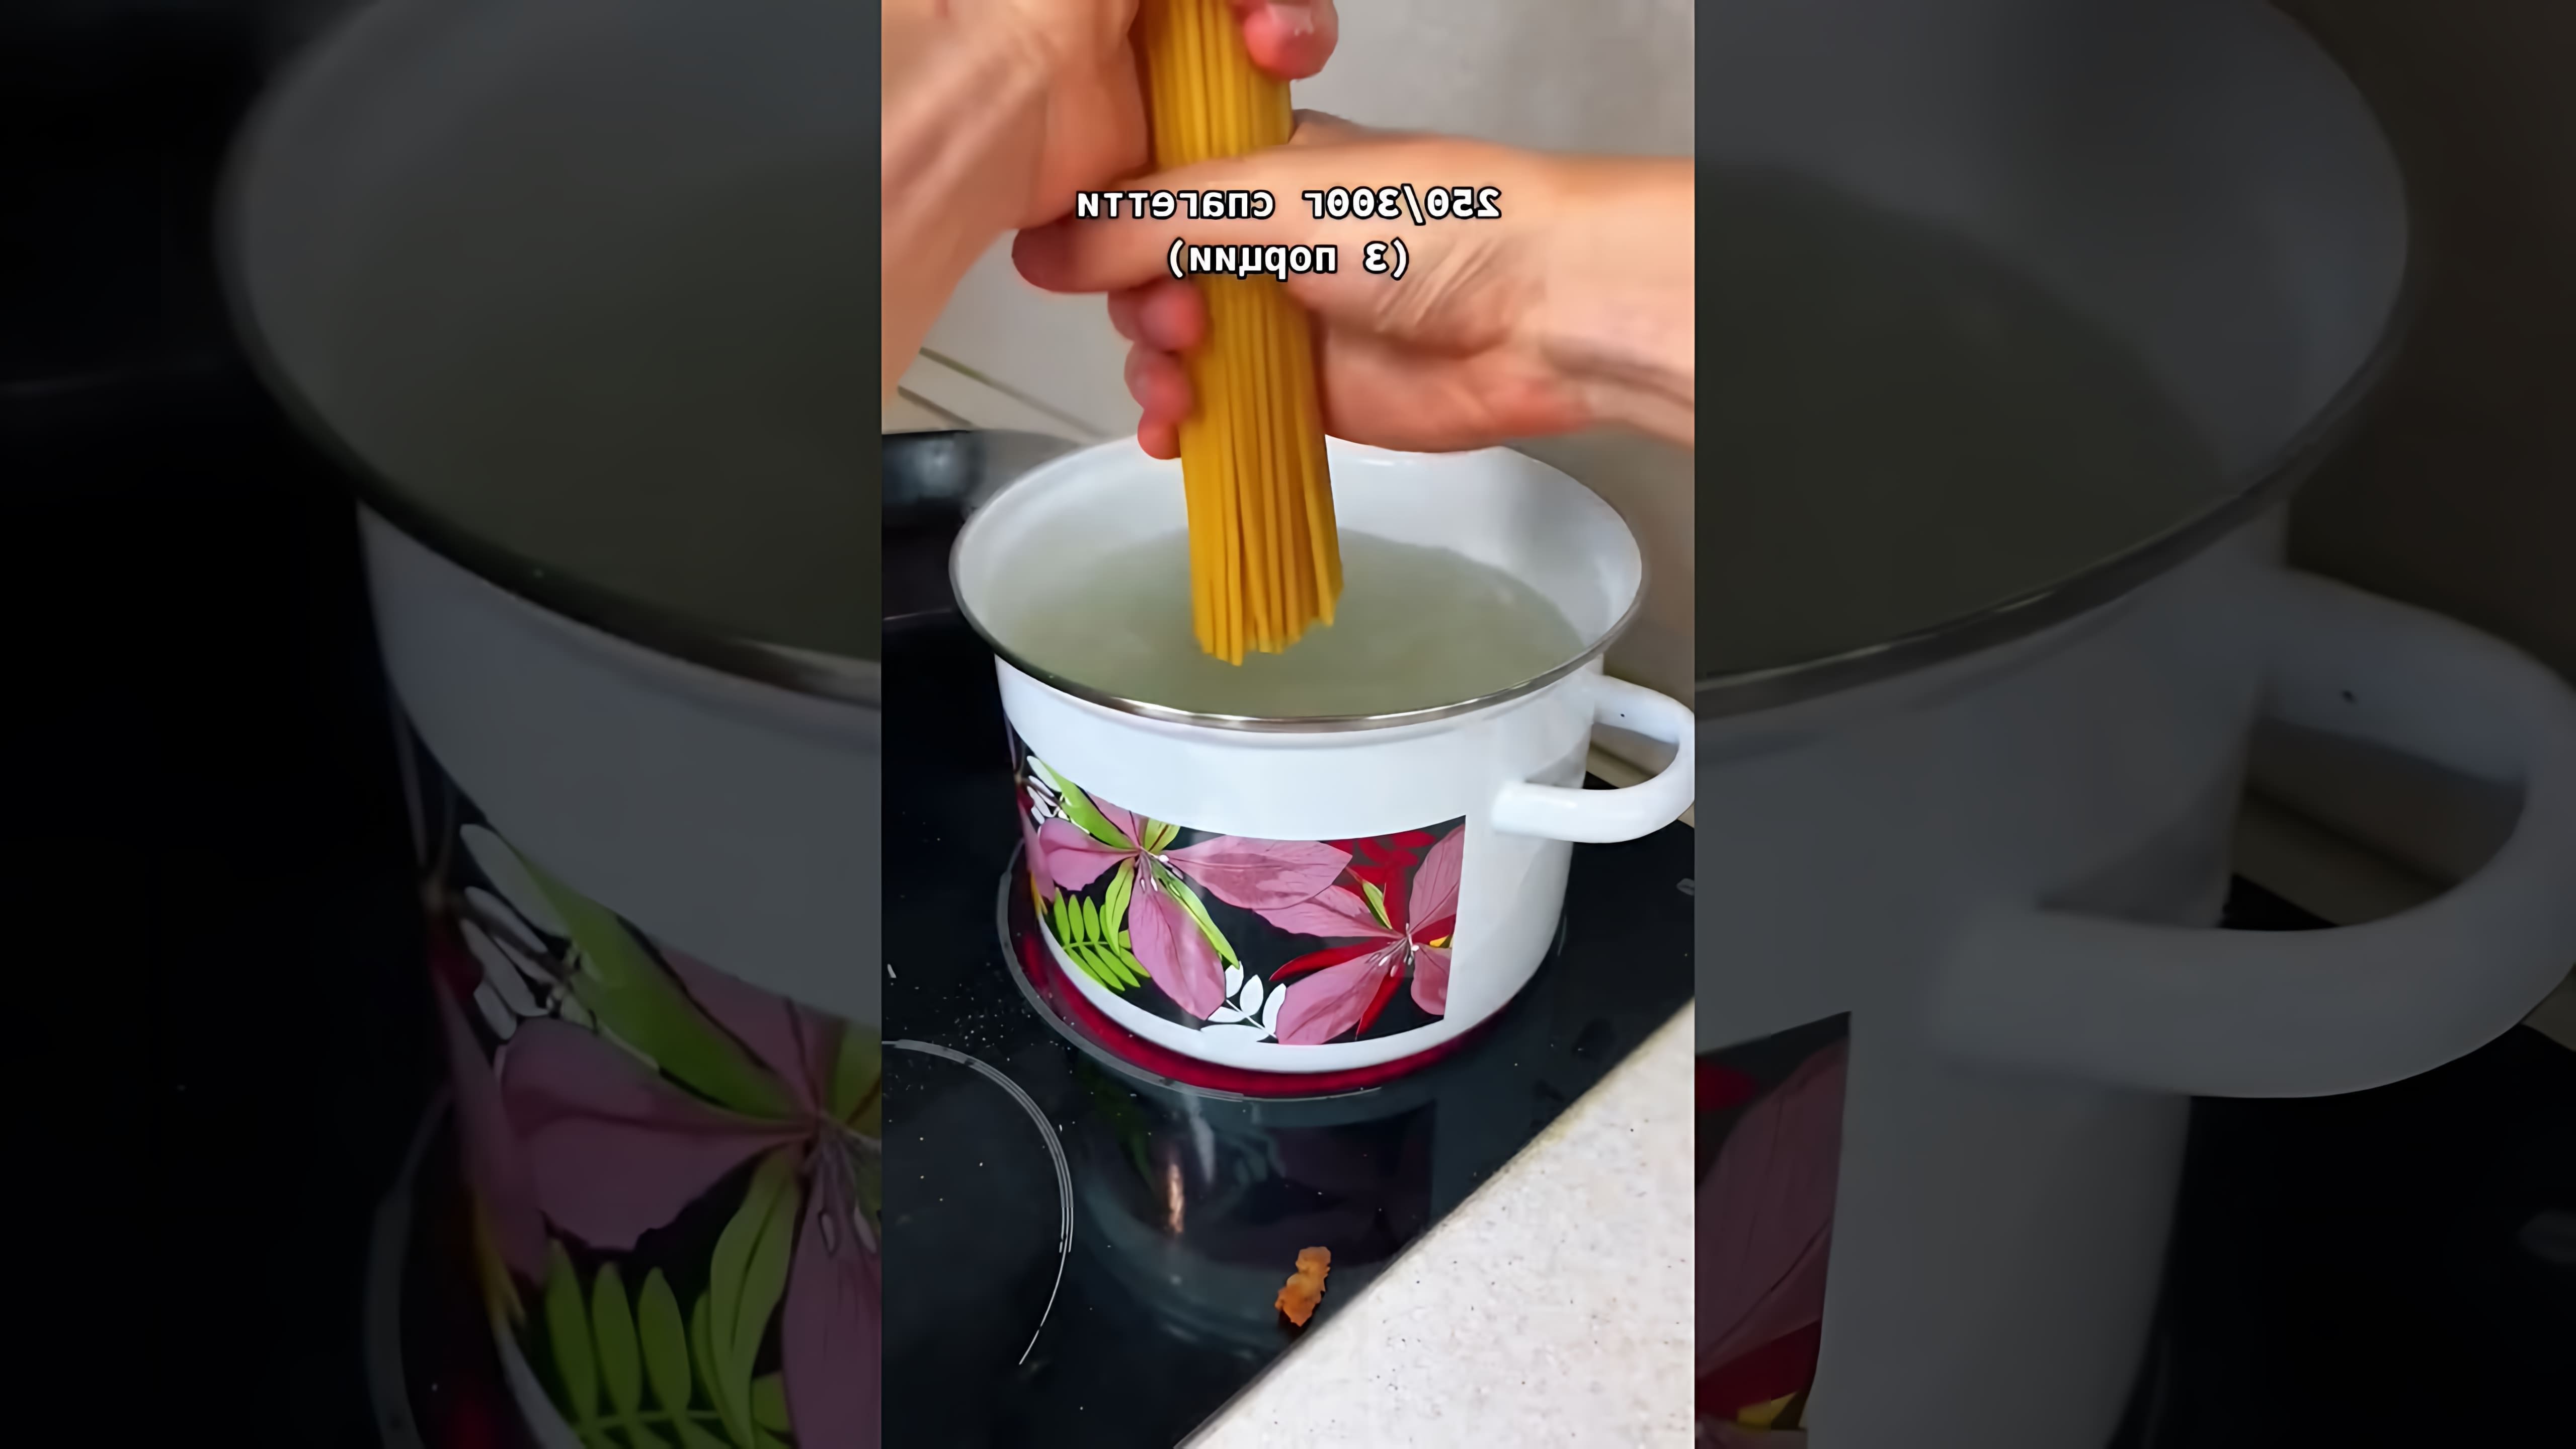 В этом видео демонстрируется рецепт приготовления настоящей итальянской карбонары